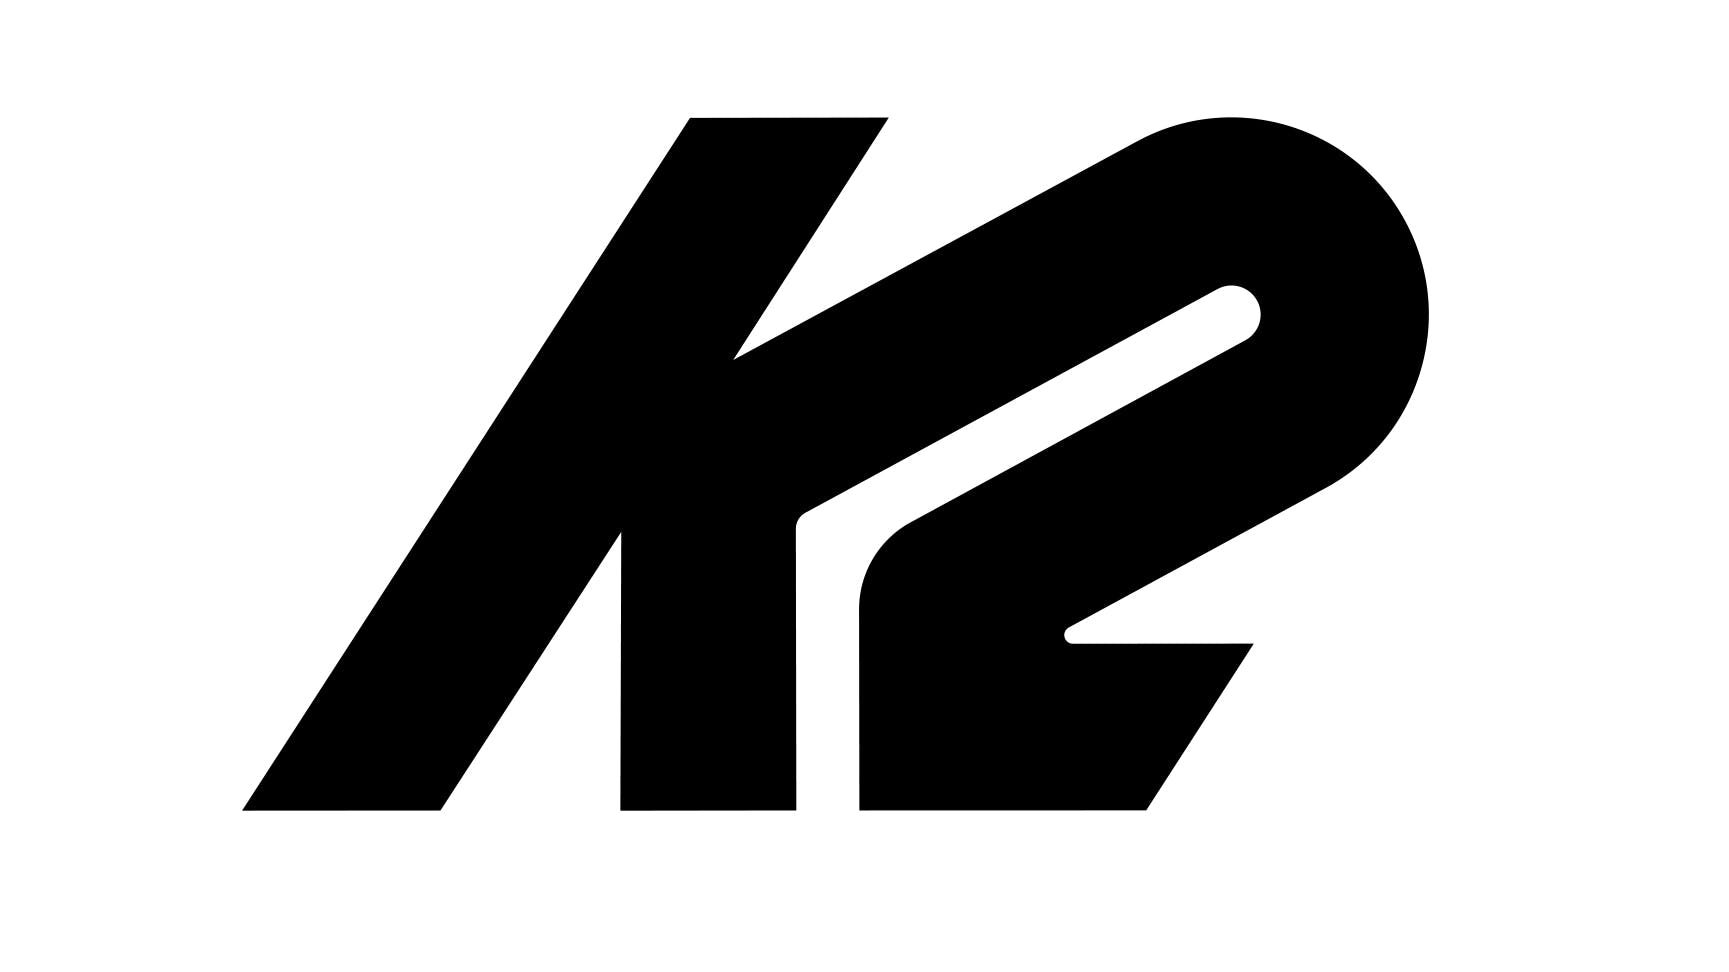 K2 logo has the K blending into the 2.